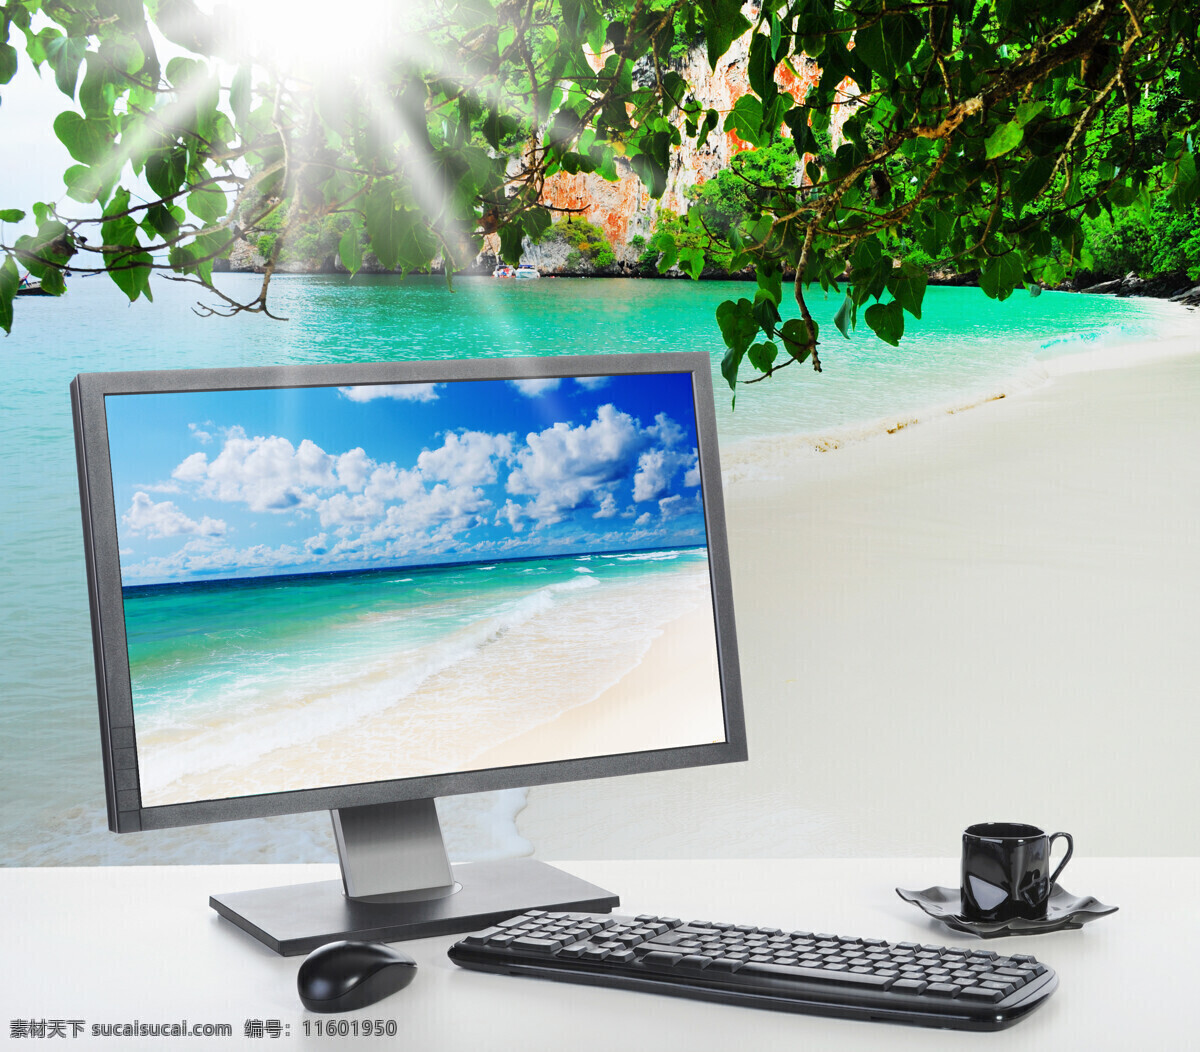 大海 电脑 显示器 树 阳光 沙滩 键盘 咖啡杯 大海图片 风景图片